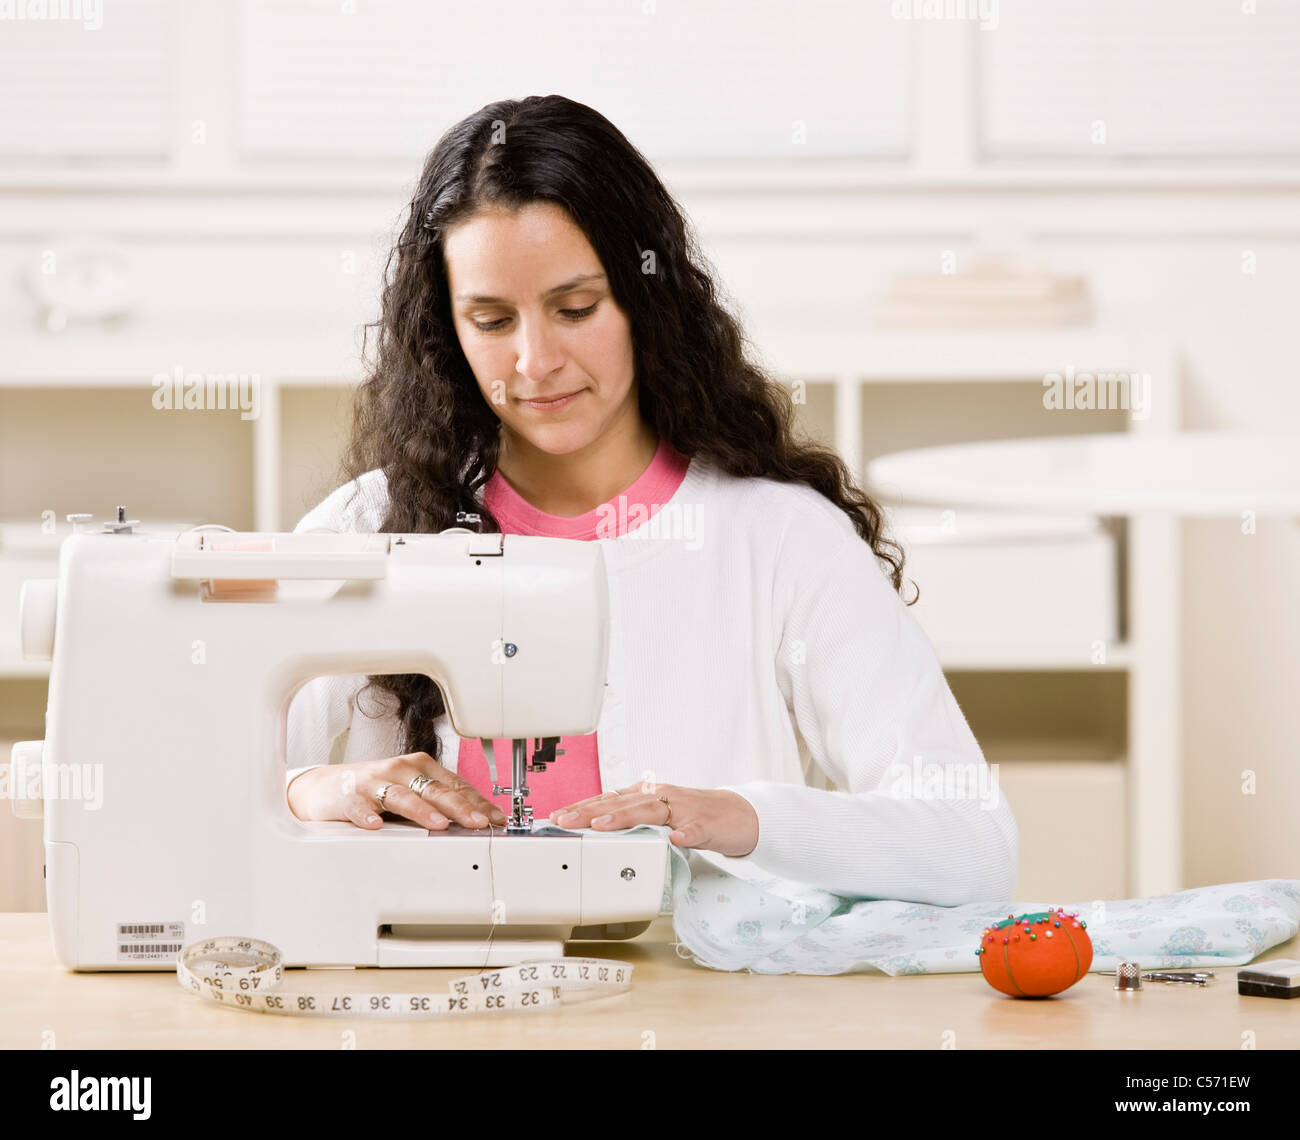 máquina de coser de color blanco. la costurera está en su oficina que está  con ropa diferente 15461656 Foto de stock en Vecteezy